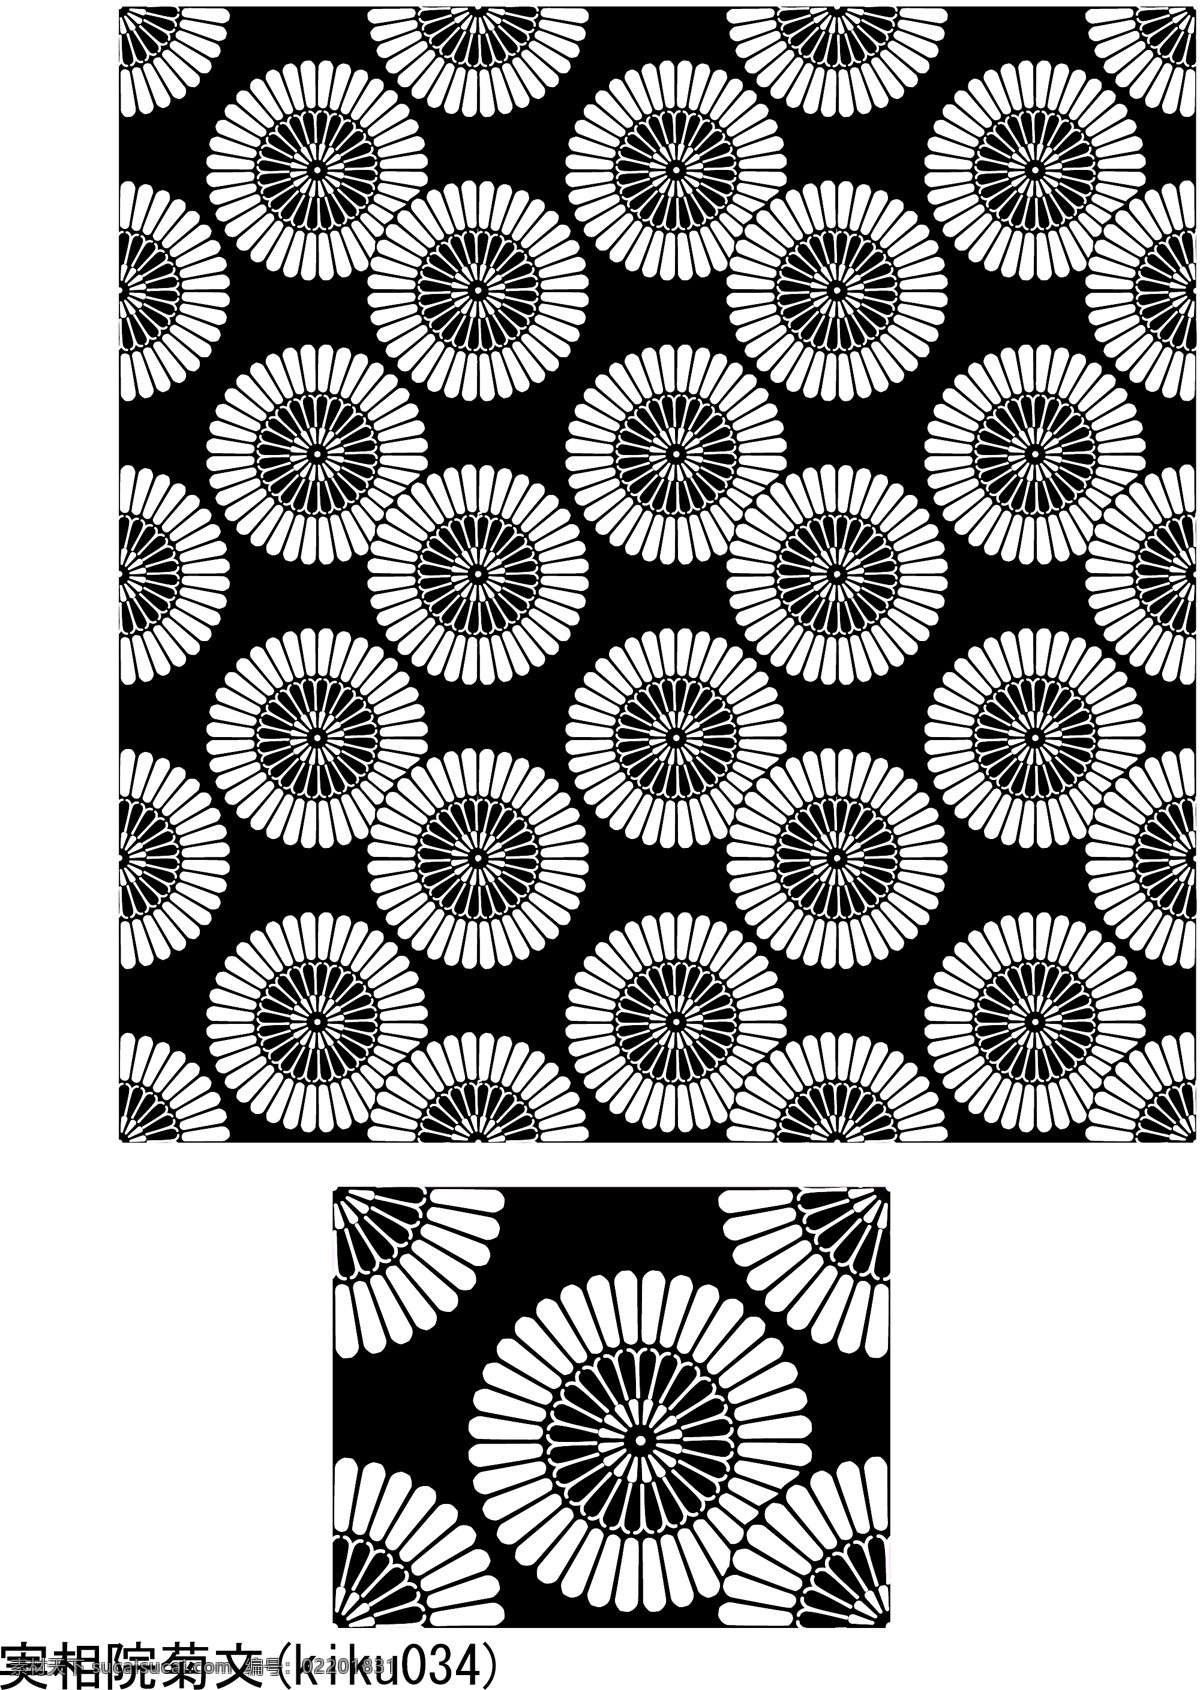 日本 传统 平铺 背景 矢量 31 系列 平铺背景 圆形 经典模式 风格 传统材料 传统图案元素 矢量图 花纹花边